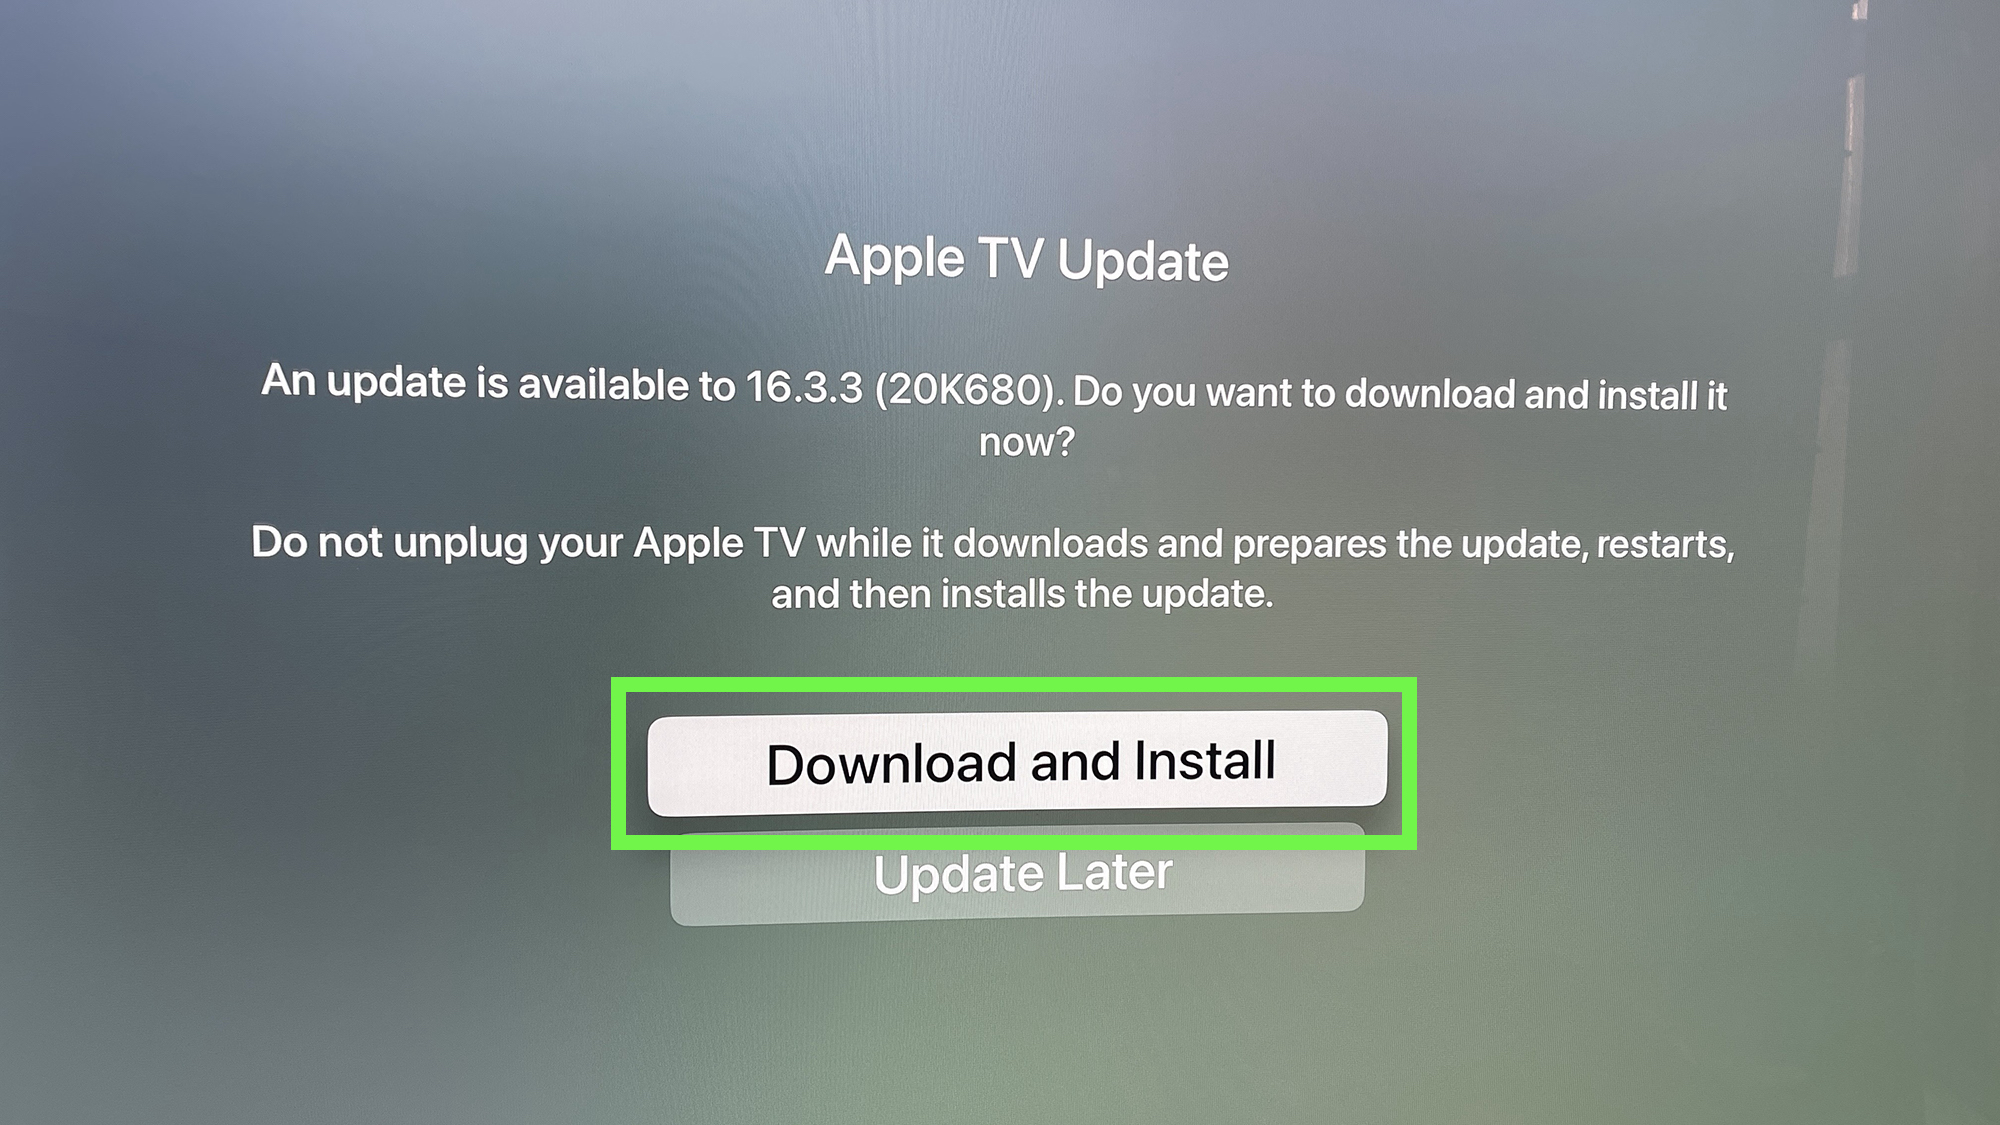 Der tvOS-Update-Fensterbildschirm für tvOS 16.3.3 mit der Download- und Installationsoption, die durch ein grünes Rechteck hervorgehoben ist